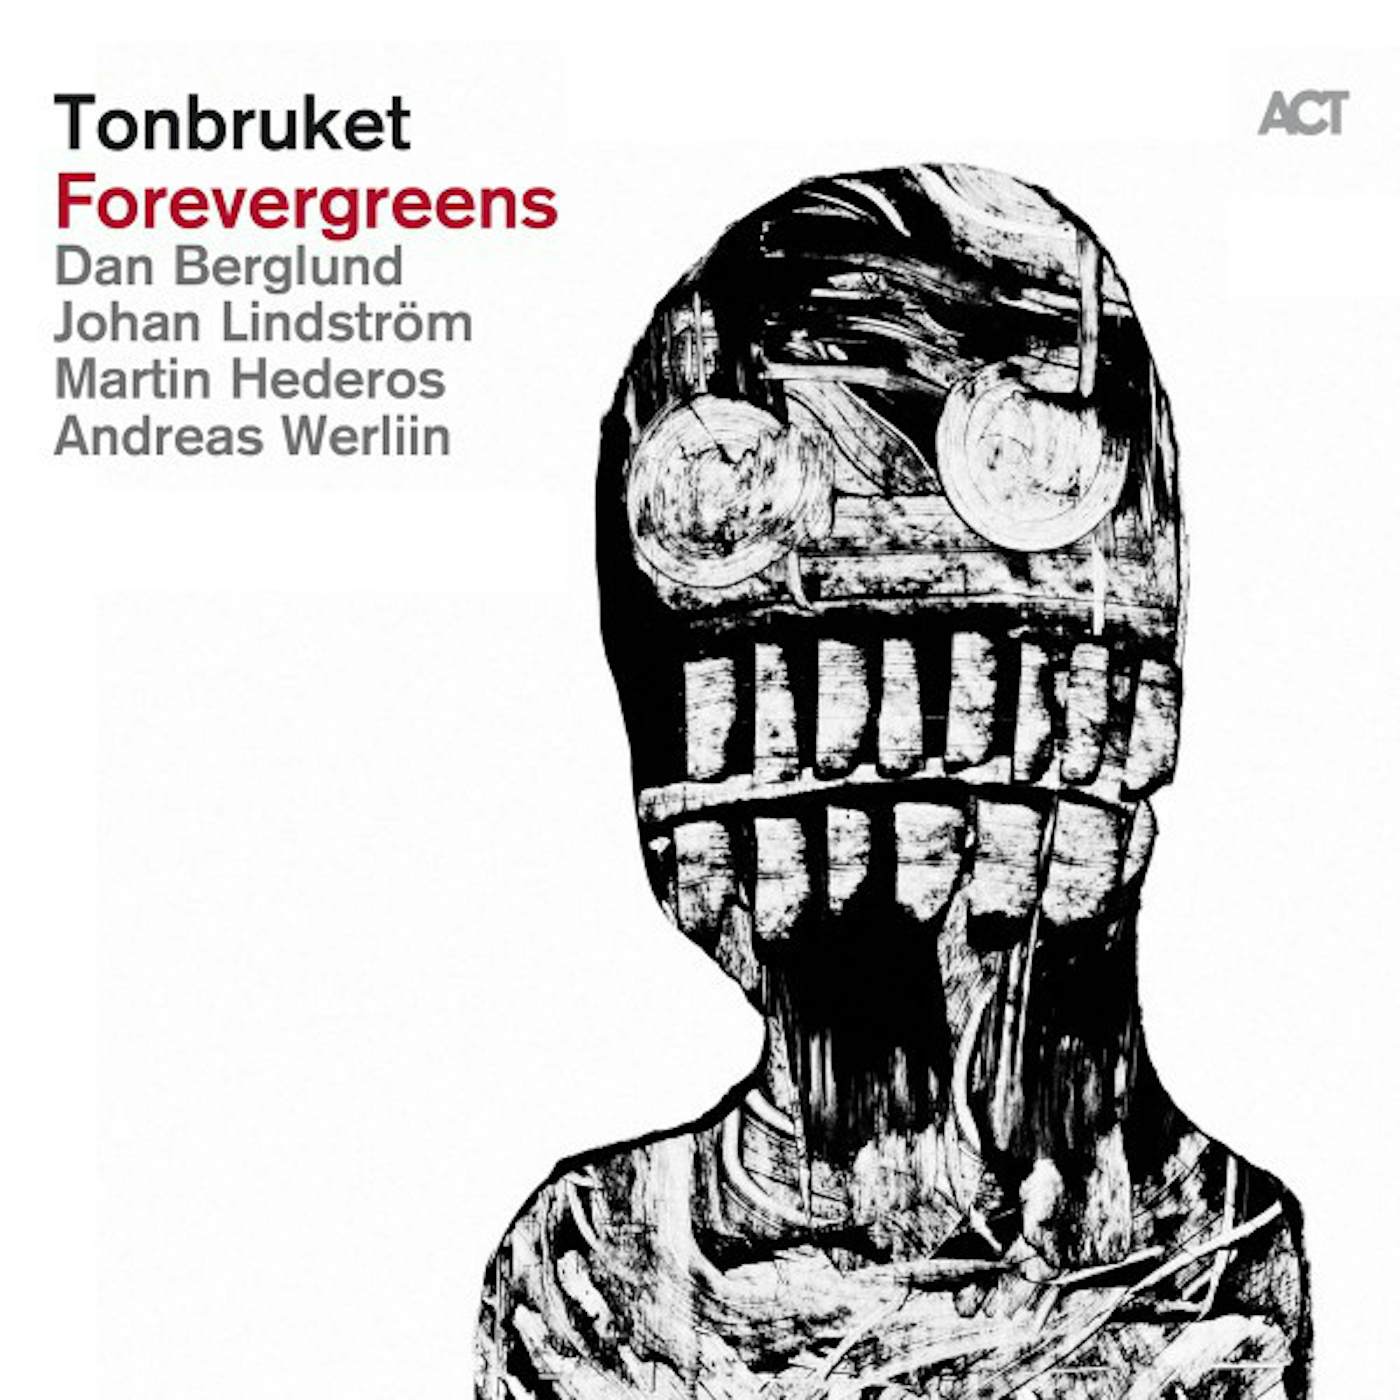 Tonbruket Forevergreens Vinyl Record